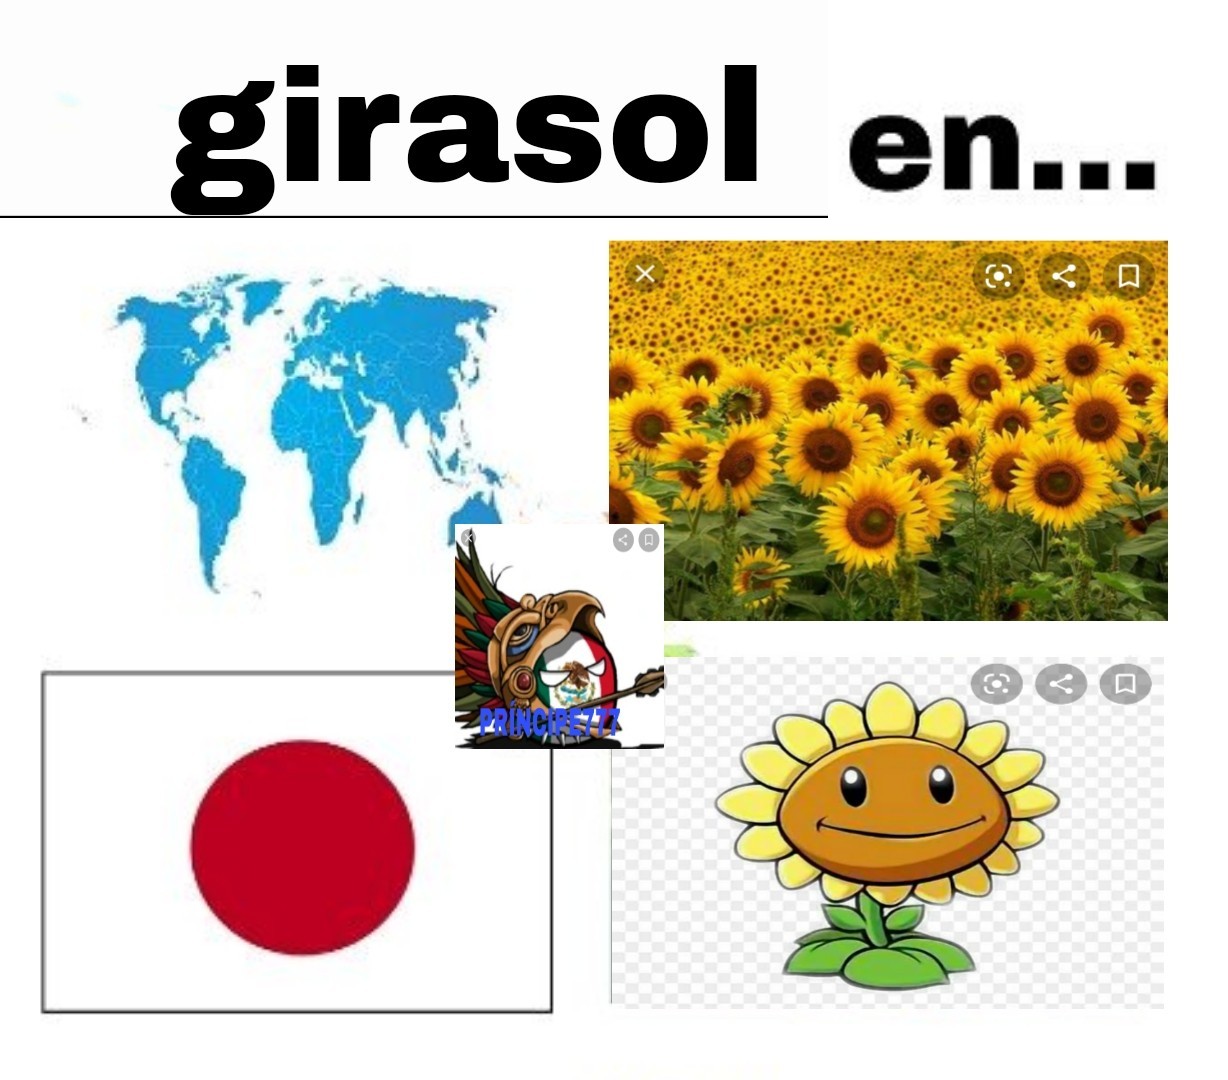 Pone la canción del girasol* - Meme by Principe777 :) Memedroid